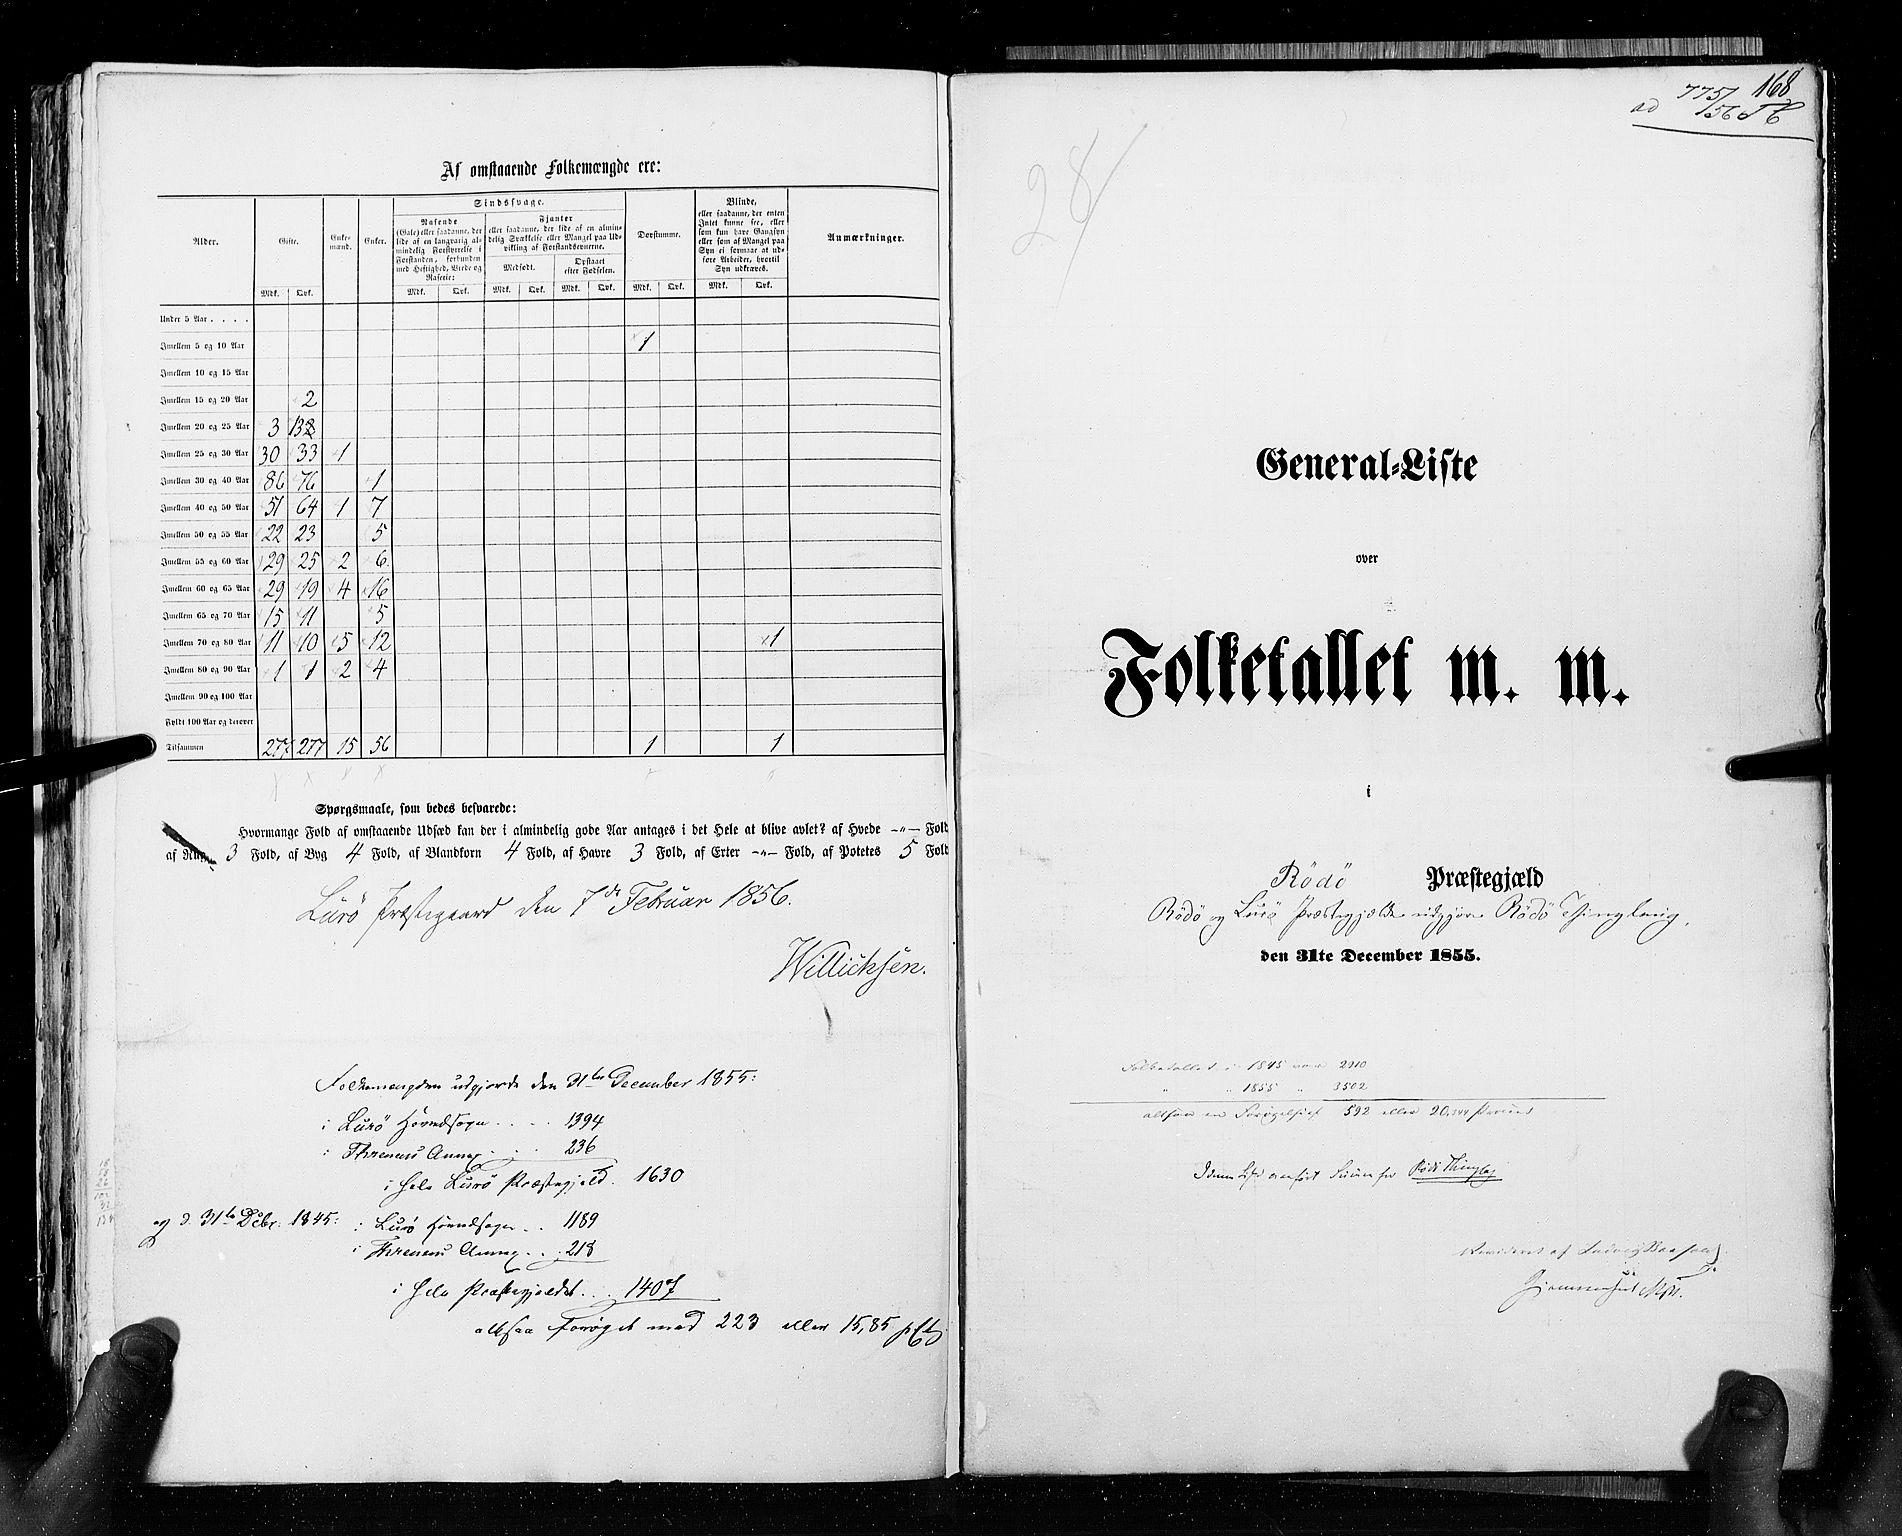 RA, Folketellingen 1855, bind 6A: Nordre Trondhjem amt og Nordland amt, 1855, s. 168